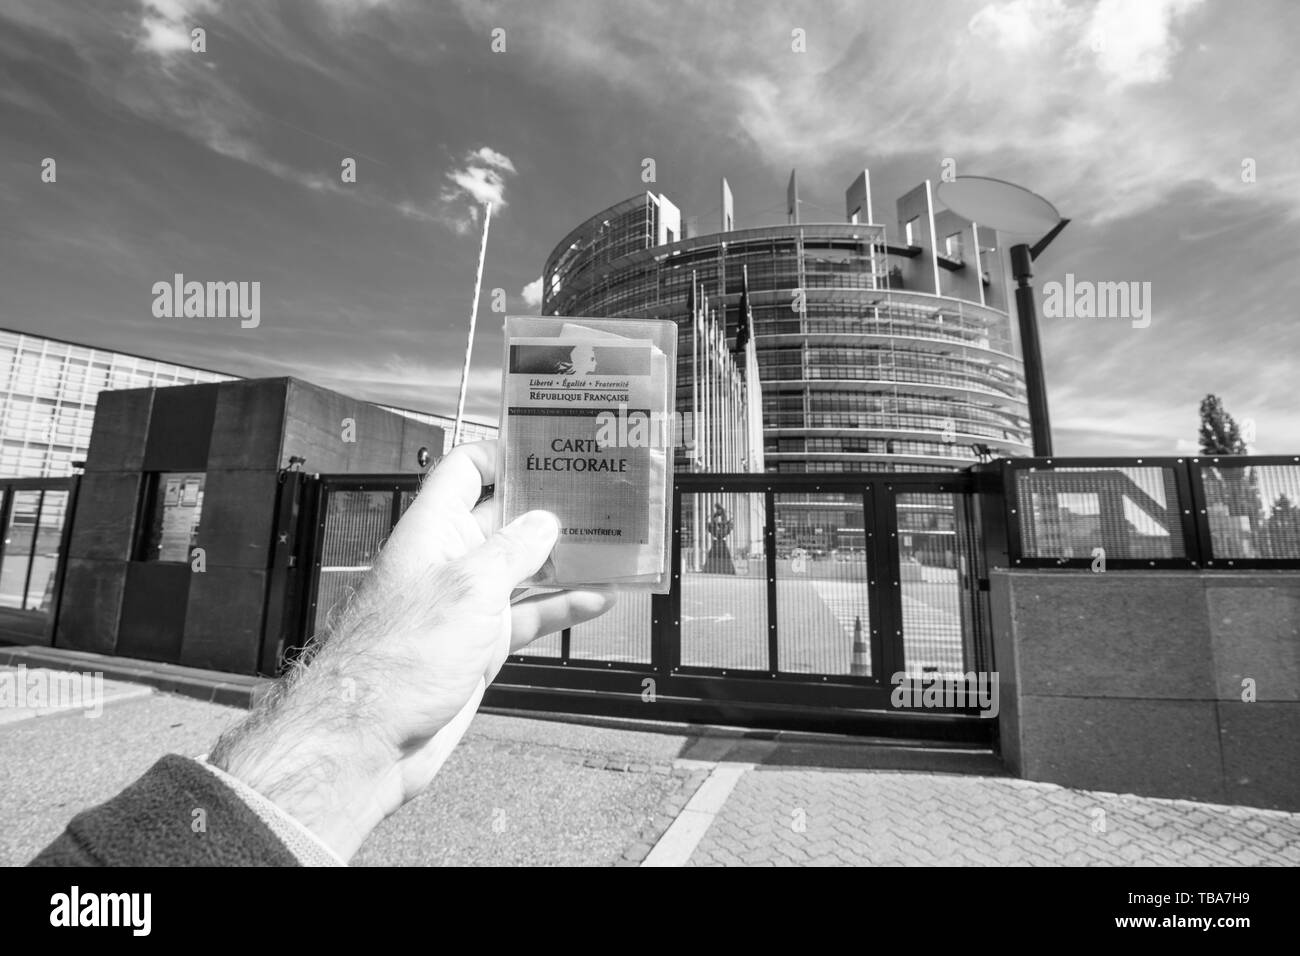 Strasbourg, France - 26 mai 2019 : man main tenant la voiture de l'électorat français Carte électorale à l'entrée du bâtiment du siège du Parlement européen avec tous les indicateurs sur le jour des élections du Parlement européen 2019 - noir et blanc Banque D'Images